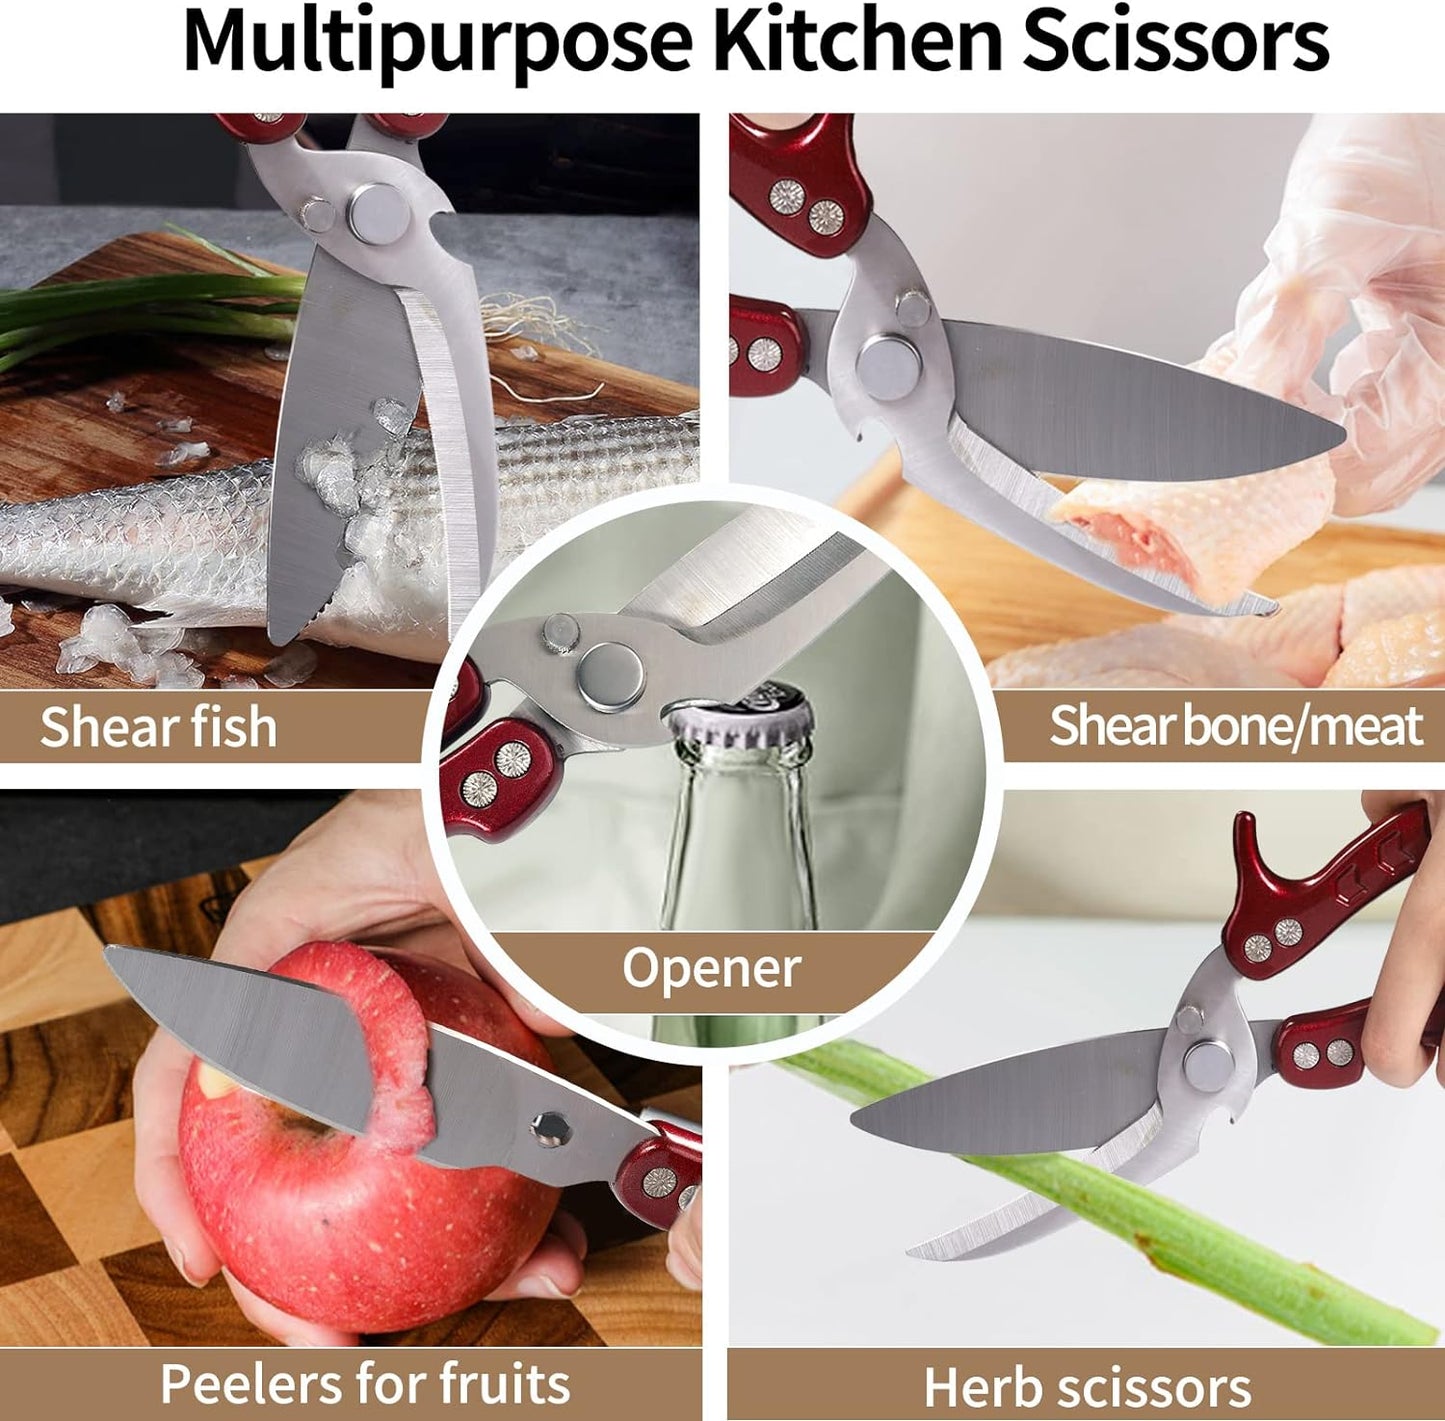 KD Kitchen Scissors Heavy Duty Shears Dishwasher Safe Stainless Steel